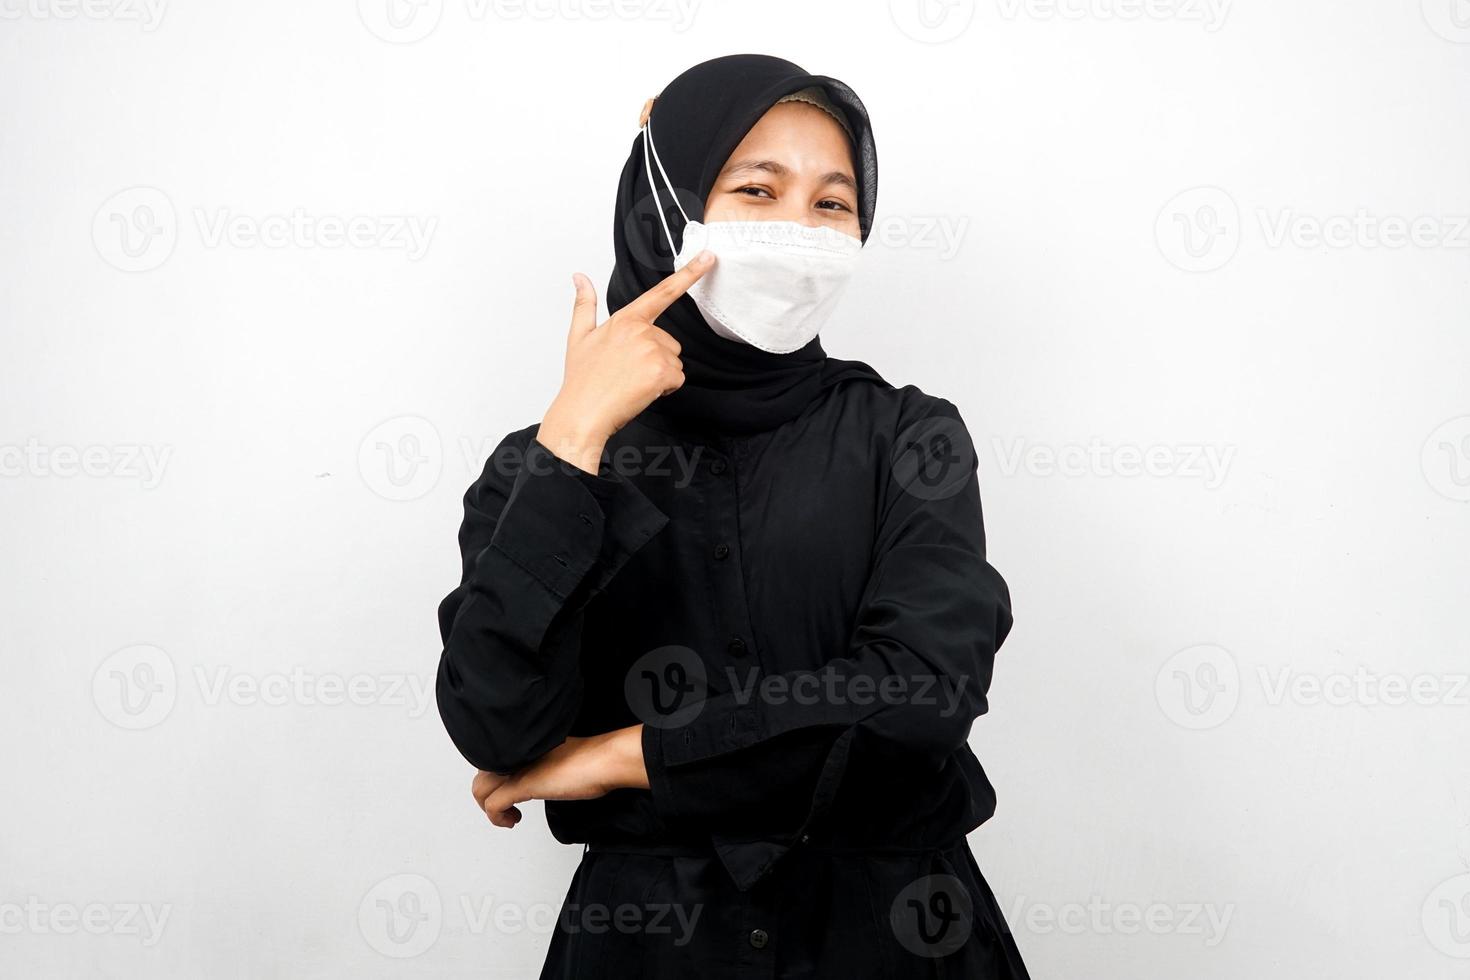 moslimvrouw met een wit masker, met de hand wijzend naar het masker, voorkom corona-virusgebaar, voorkom covid-19, geïsoleerd op een witte achtergrond foto